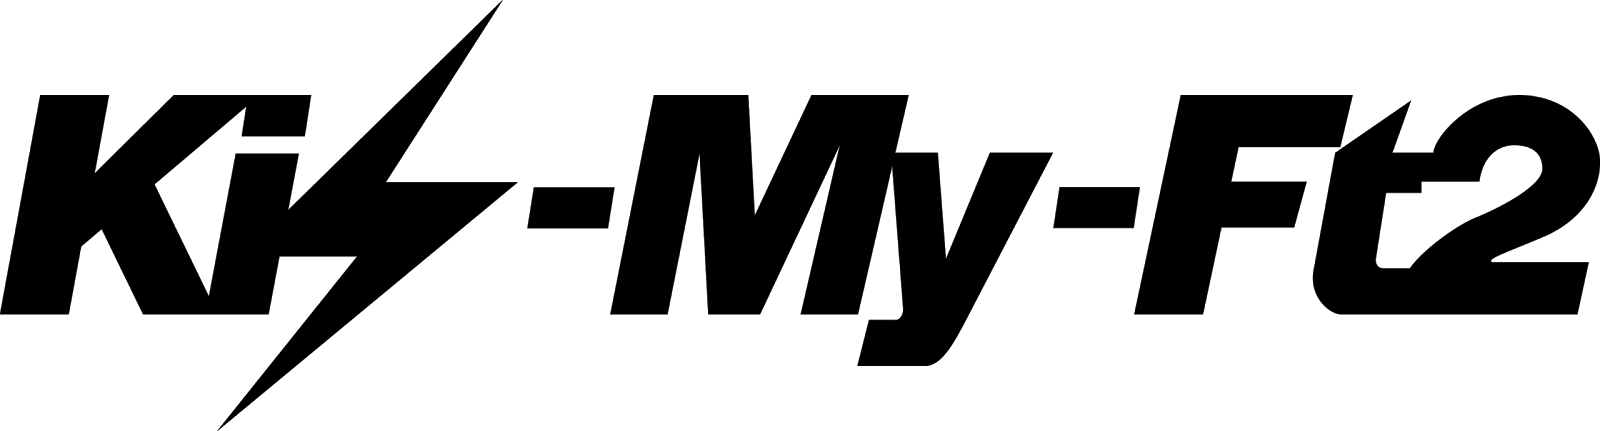 背景透明なキスマイの大きなロゴ